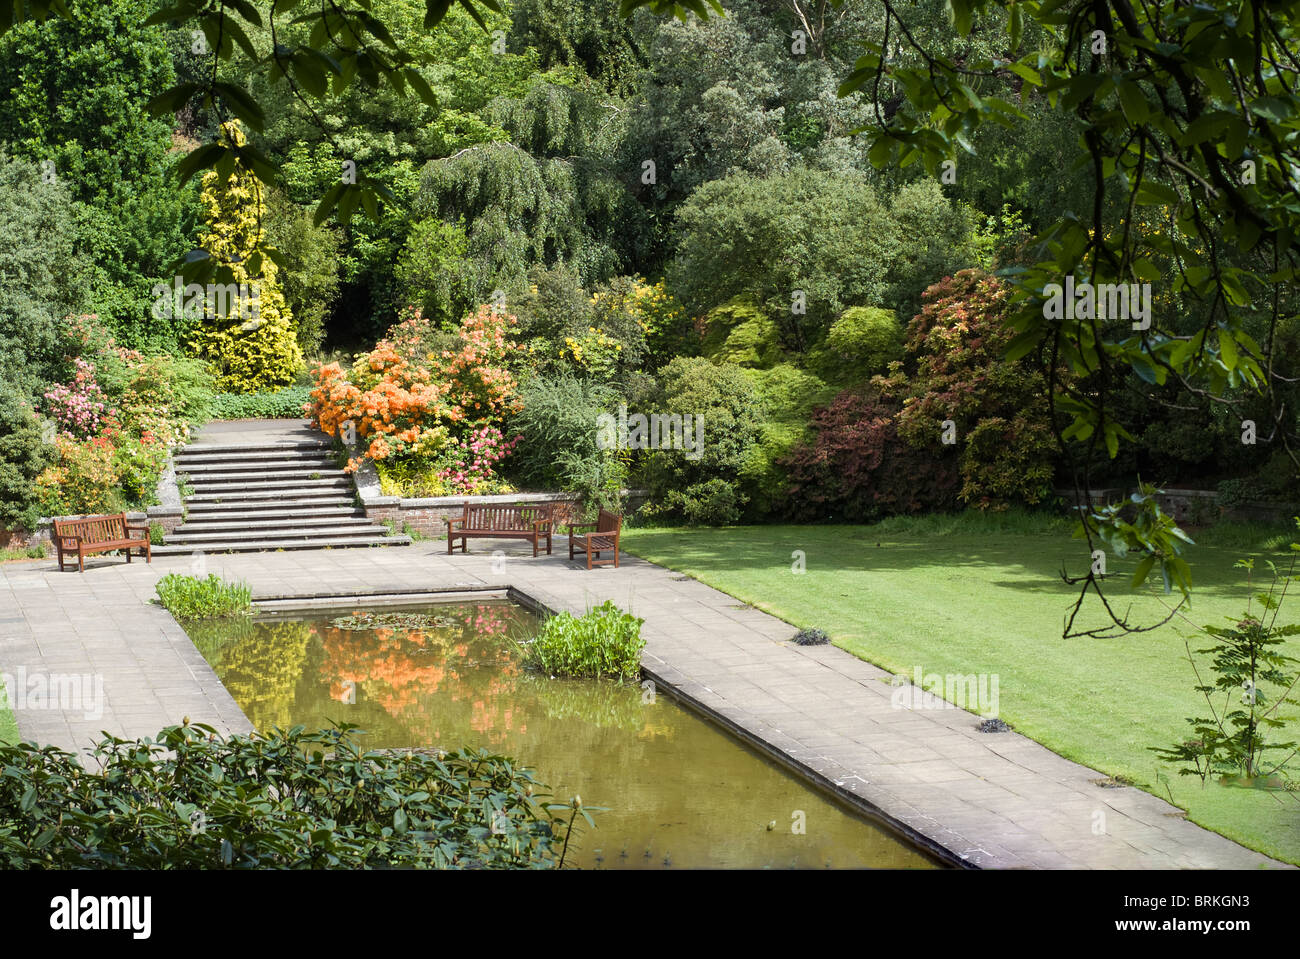 Le jardin de la colline, Hampstead Heath Londres - montrant lily pond Banque D'Images